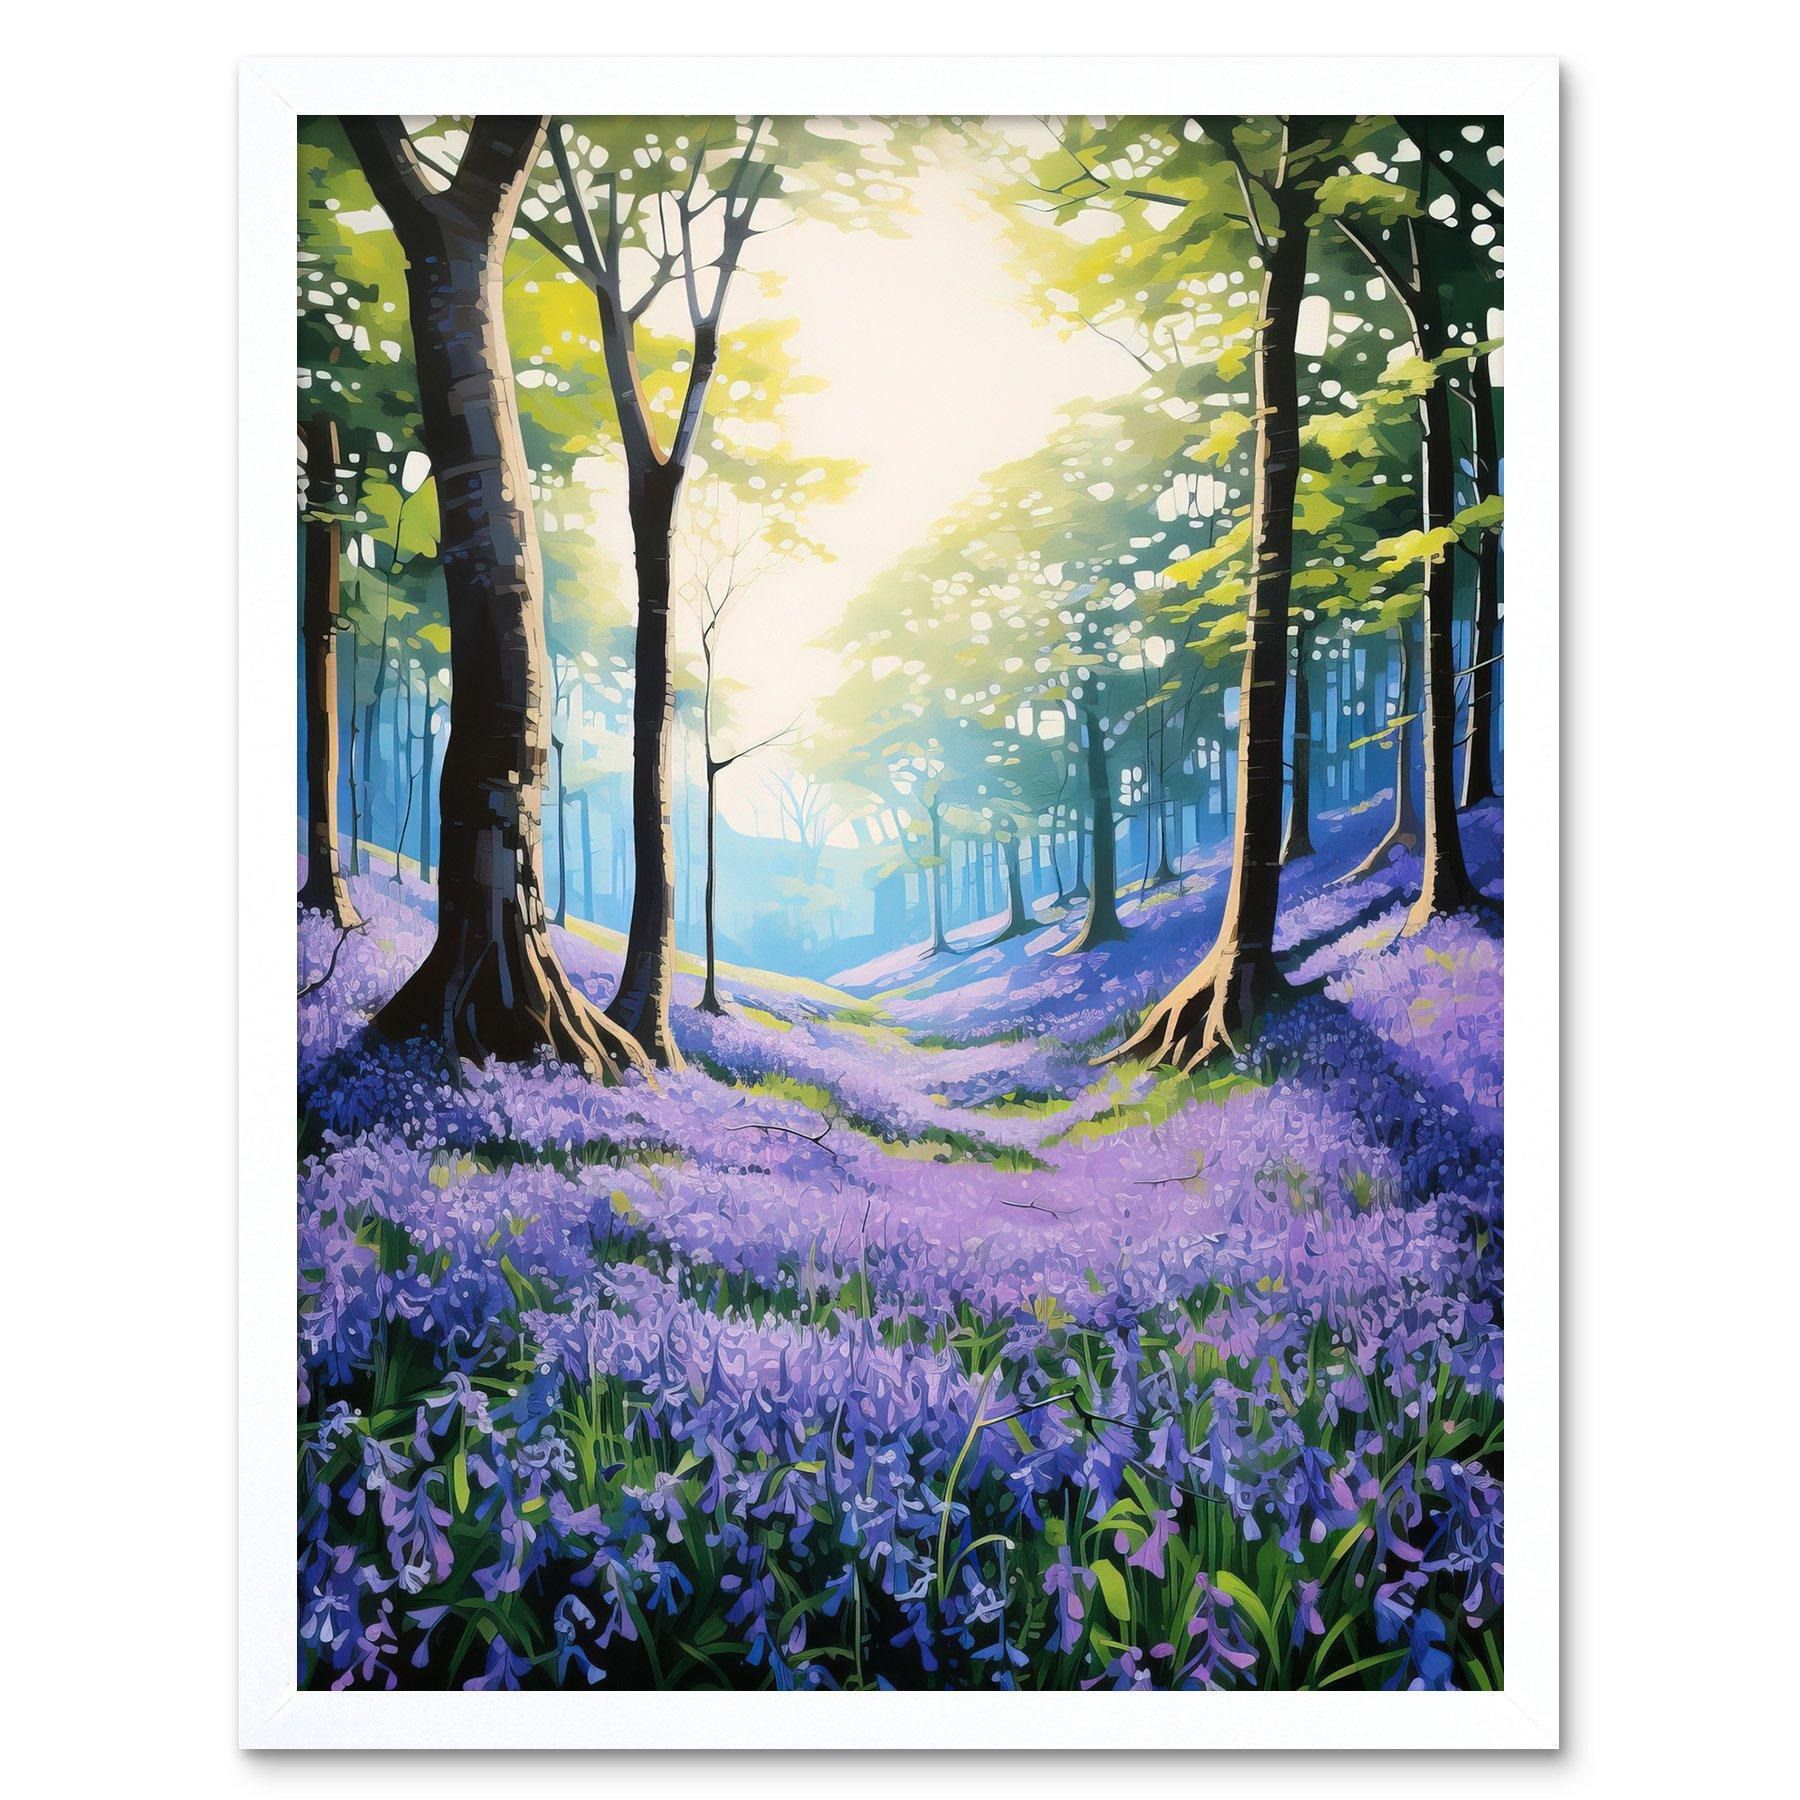 Bluebell Forest Sunshine Vibrant Artwork Purple Blue Flowers Early Morning Serene Landscape Art Print Framed Poster Wall Decor 12x16 inch - image 1